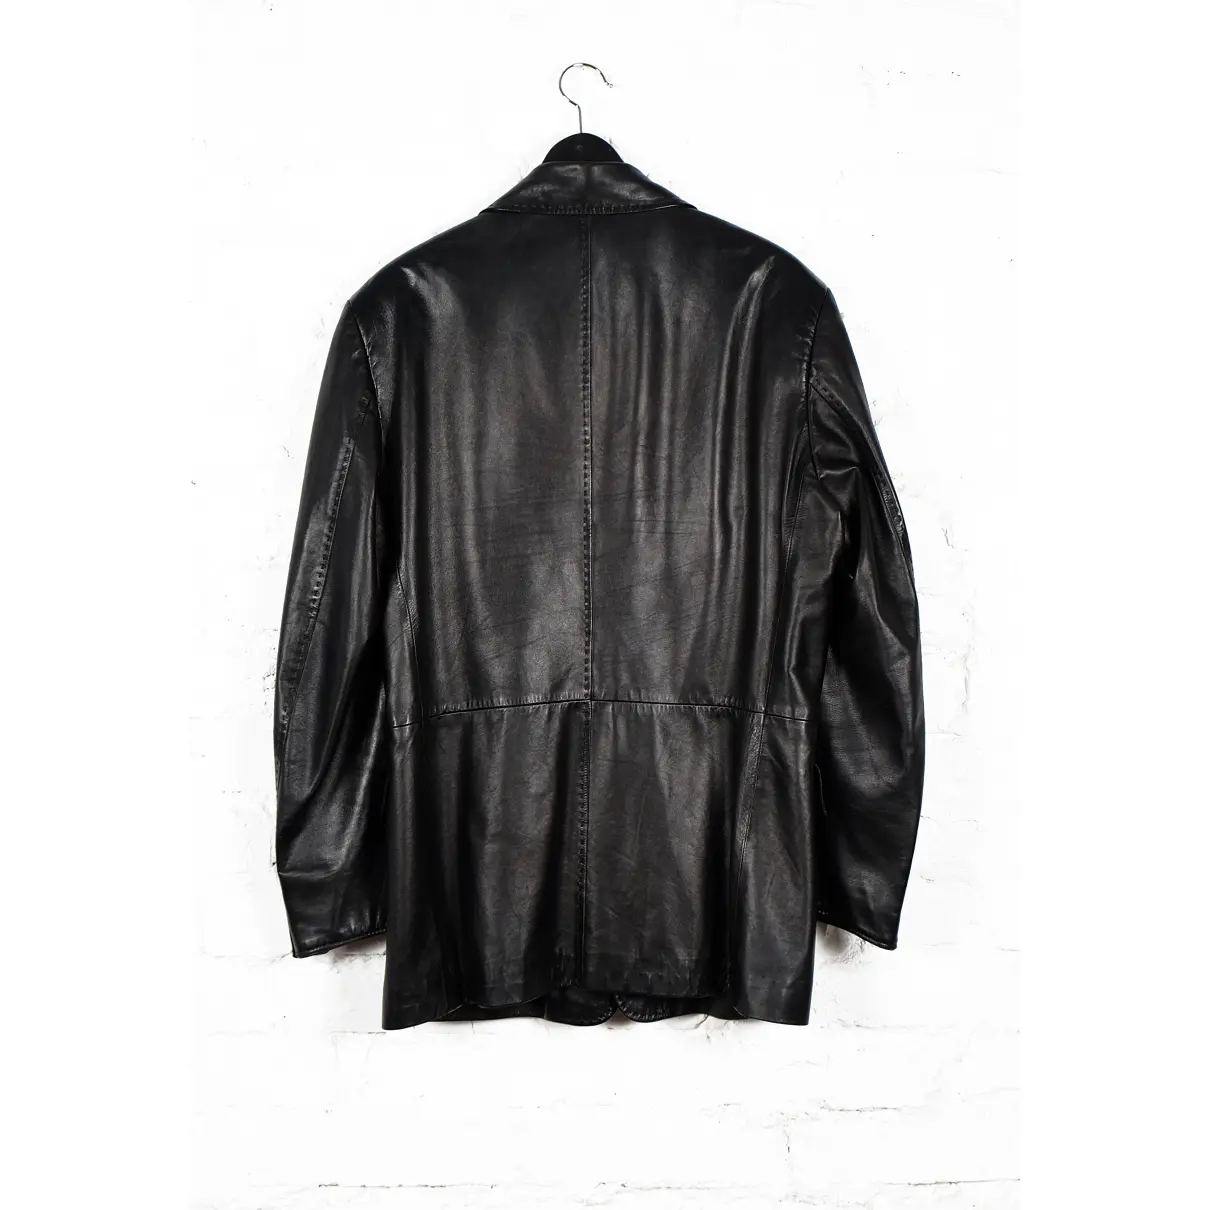 Buy Baldessarini Leather jacket online